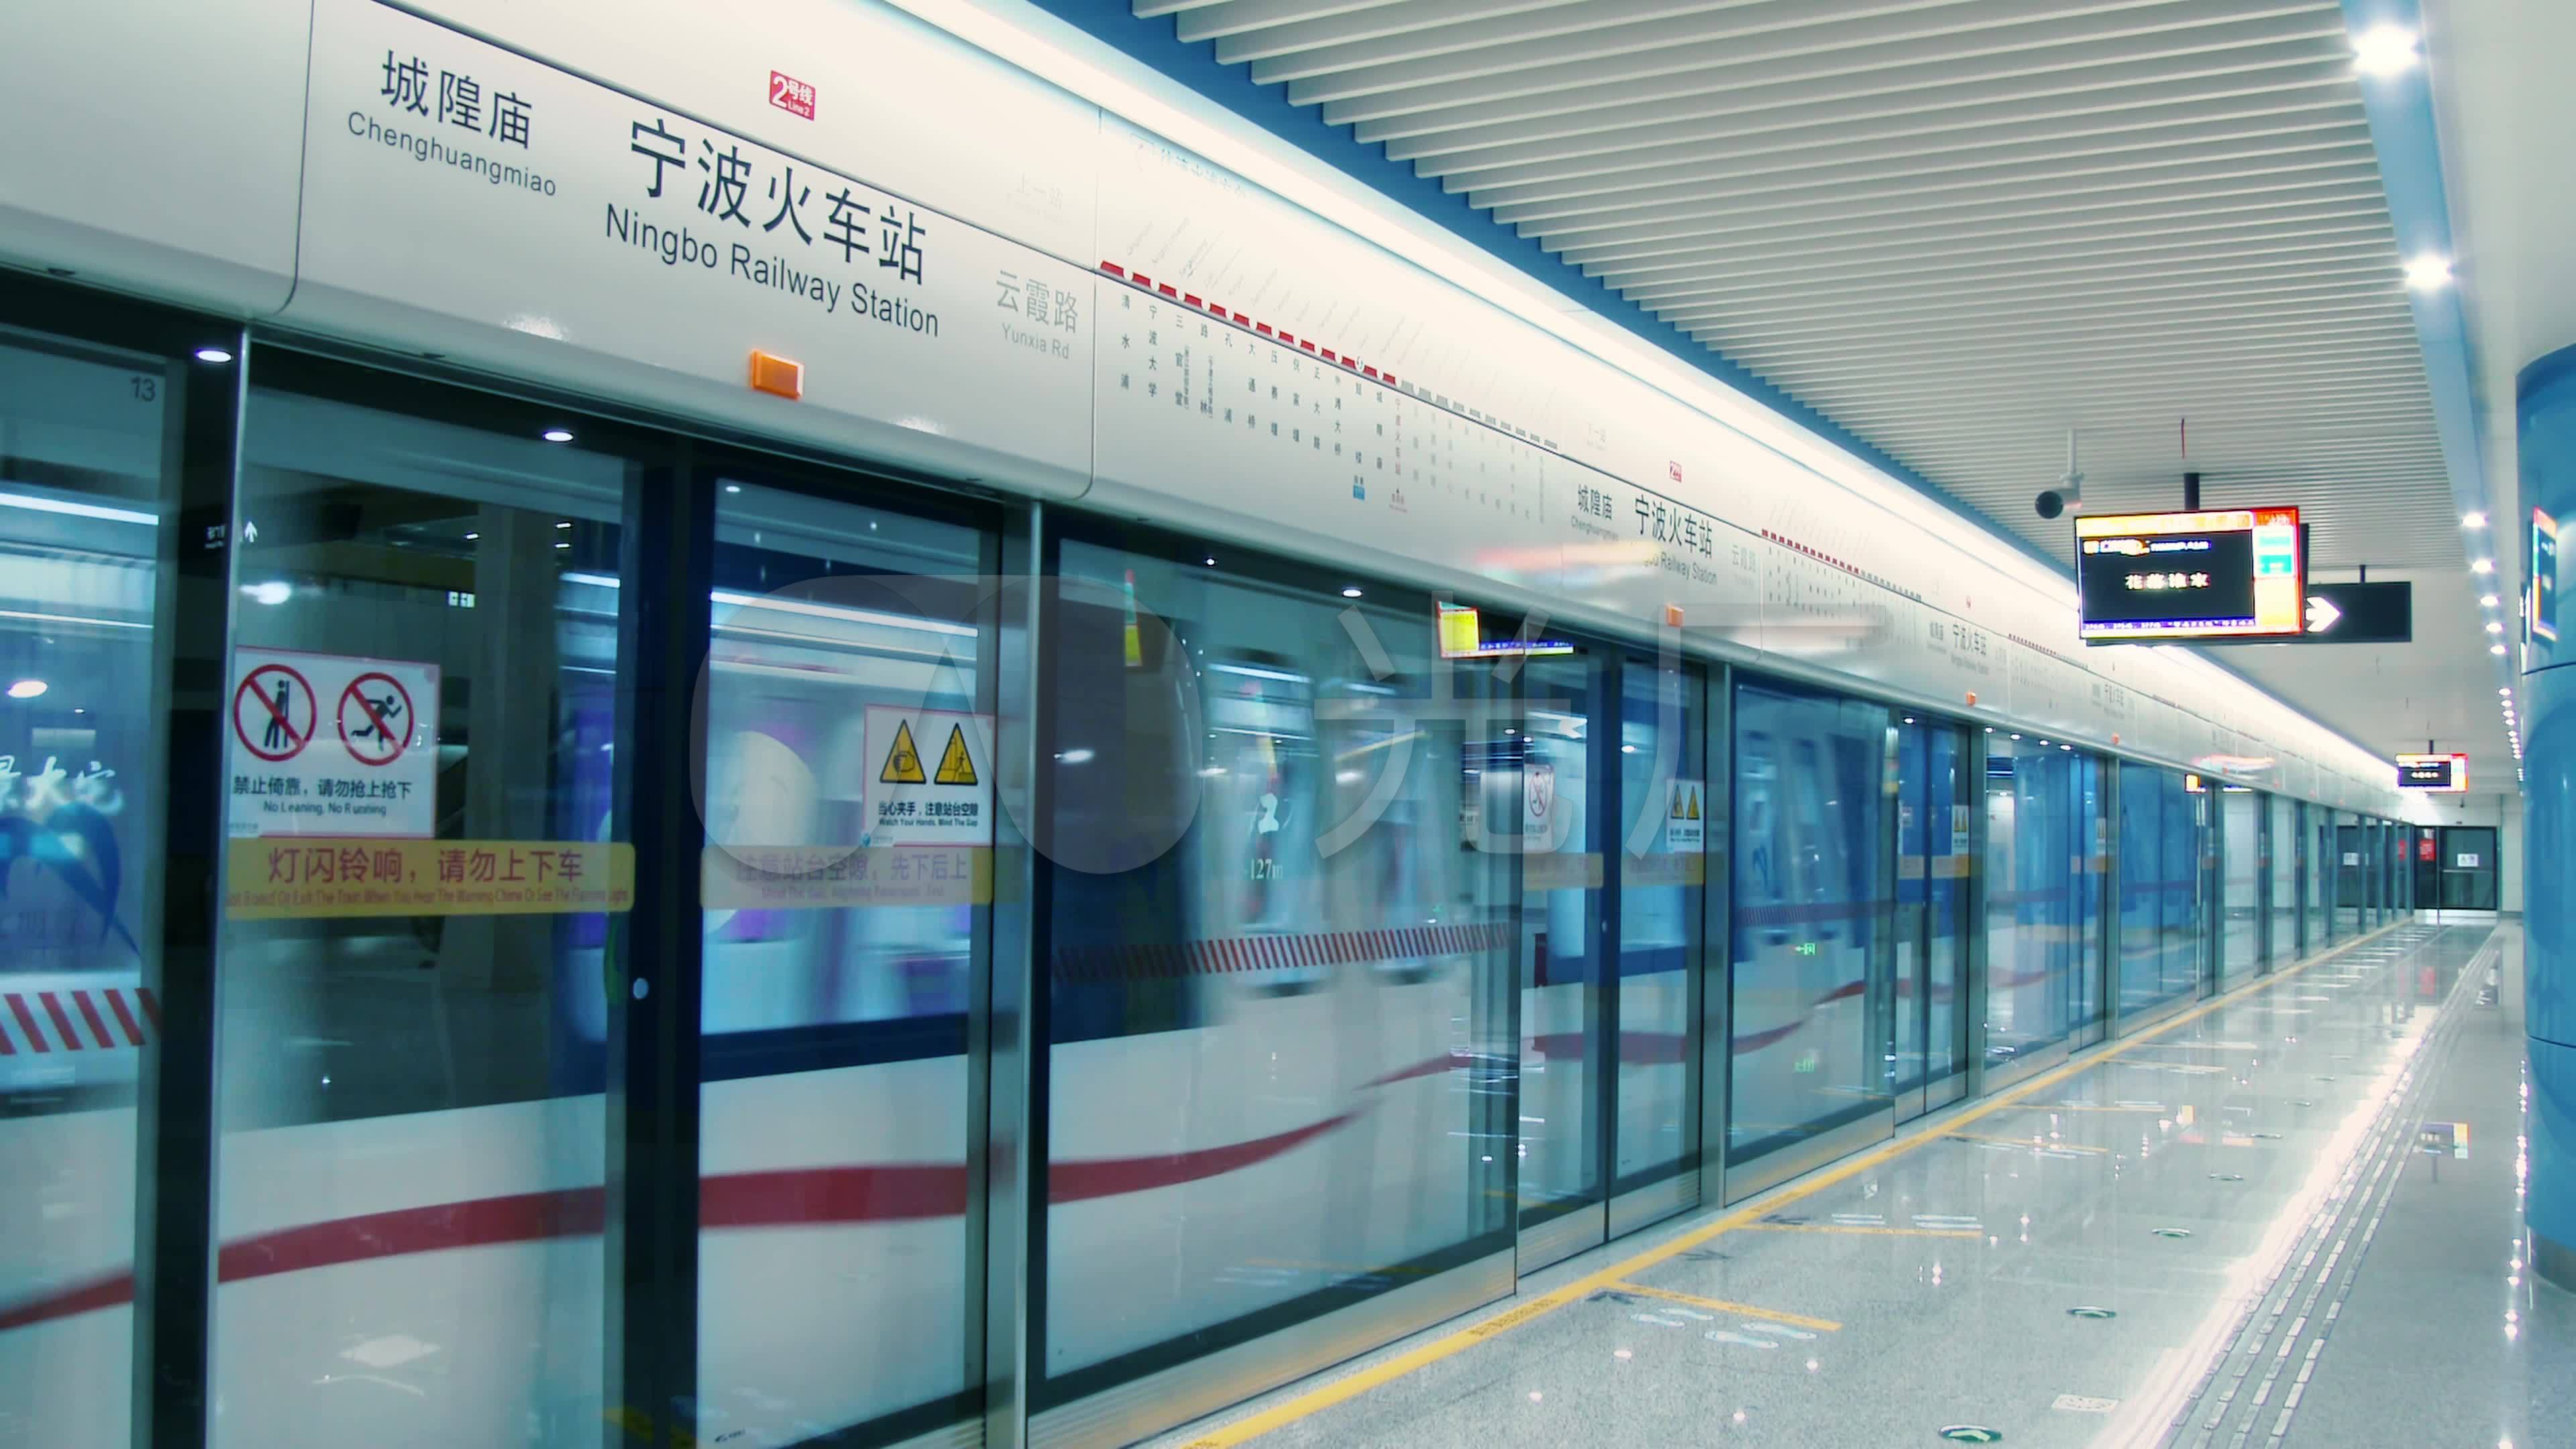 3分钟过江！地铁2号线引领哈尔滨新区发展新格局__凤凰网